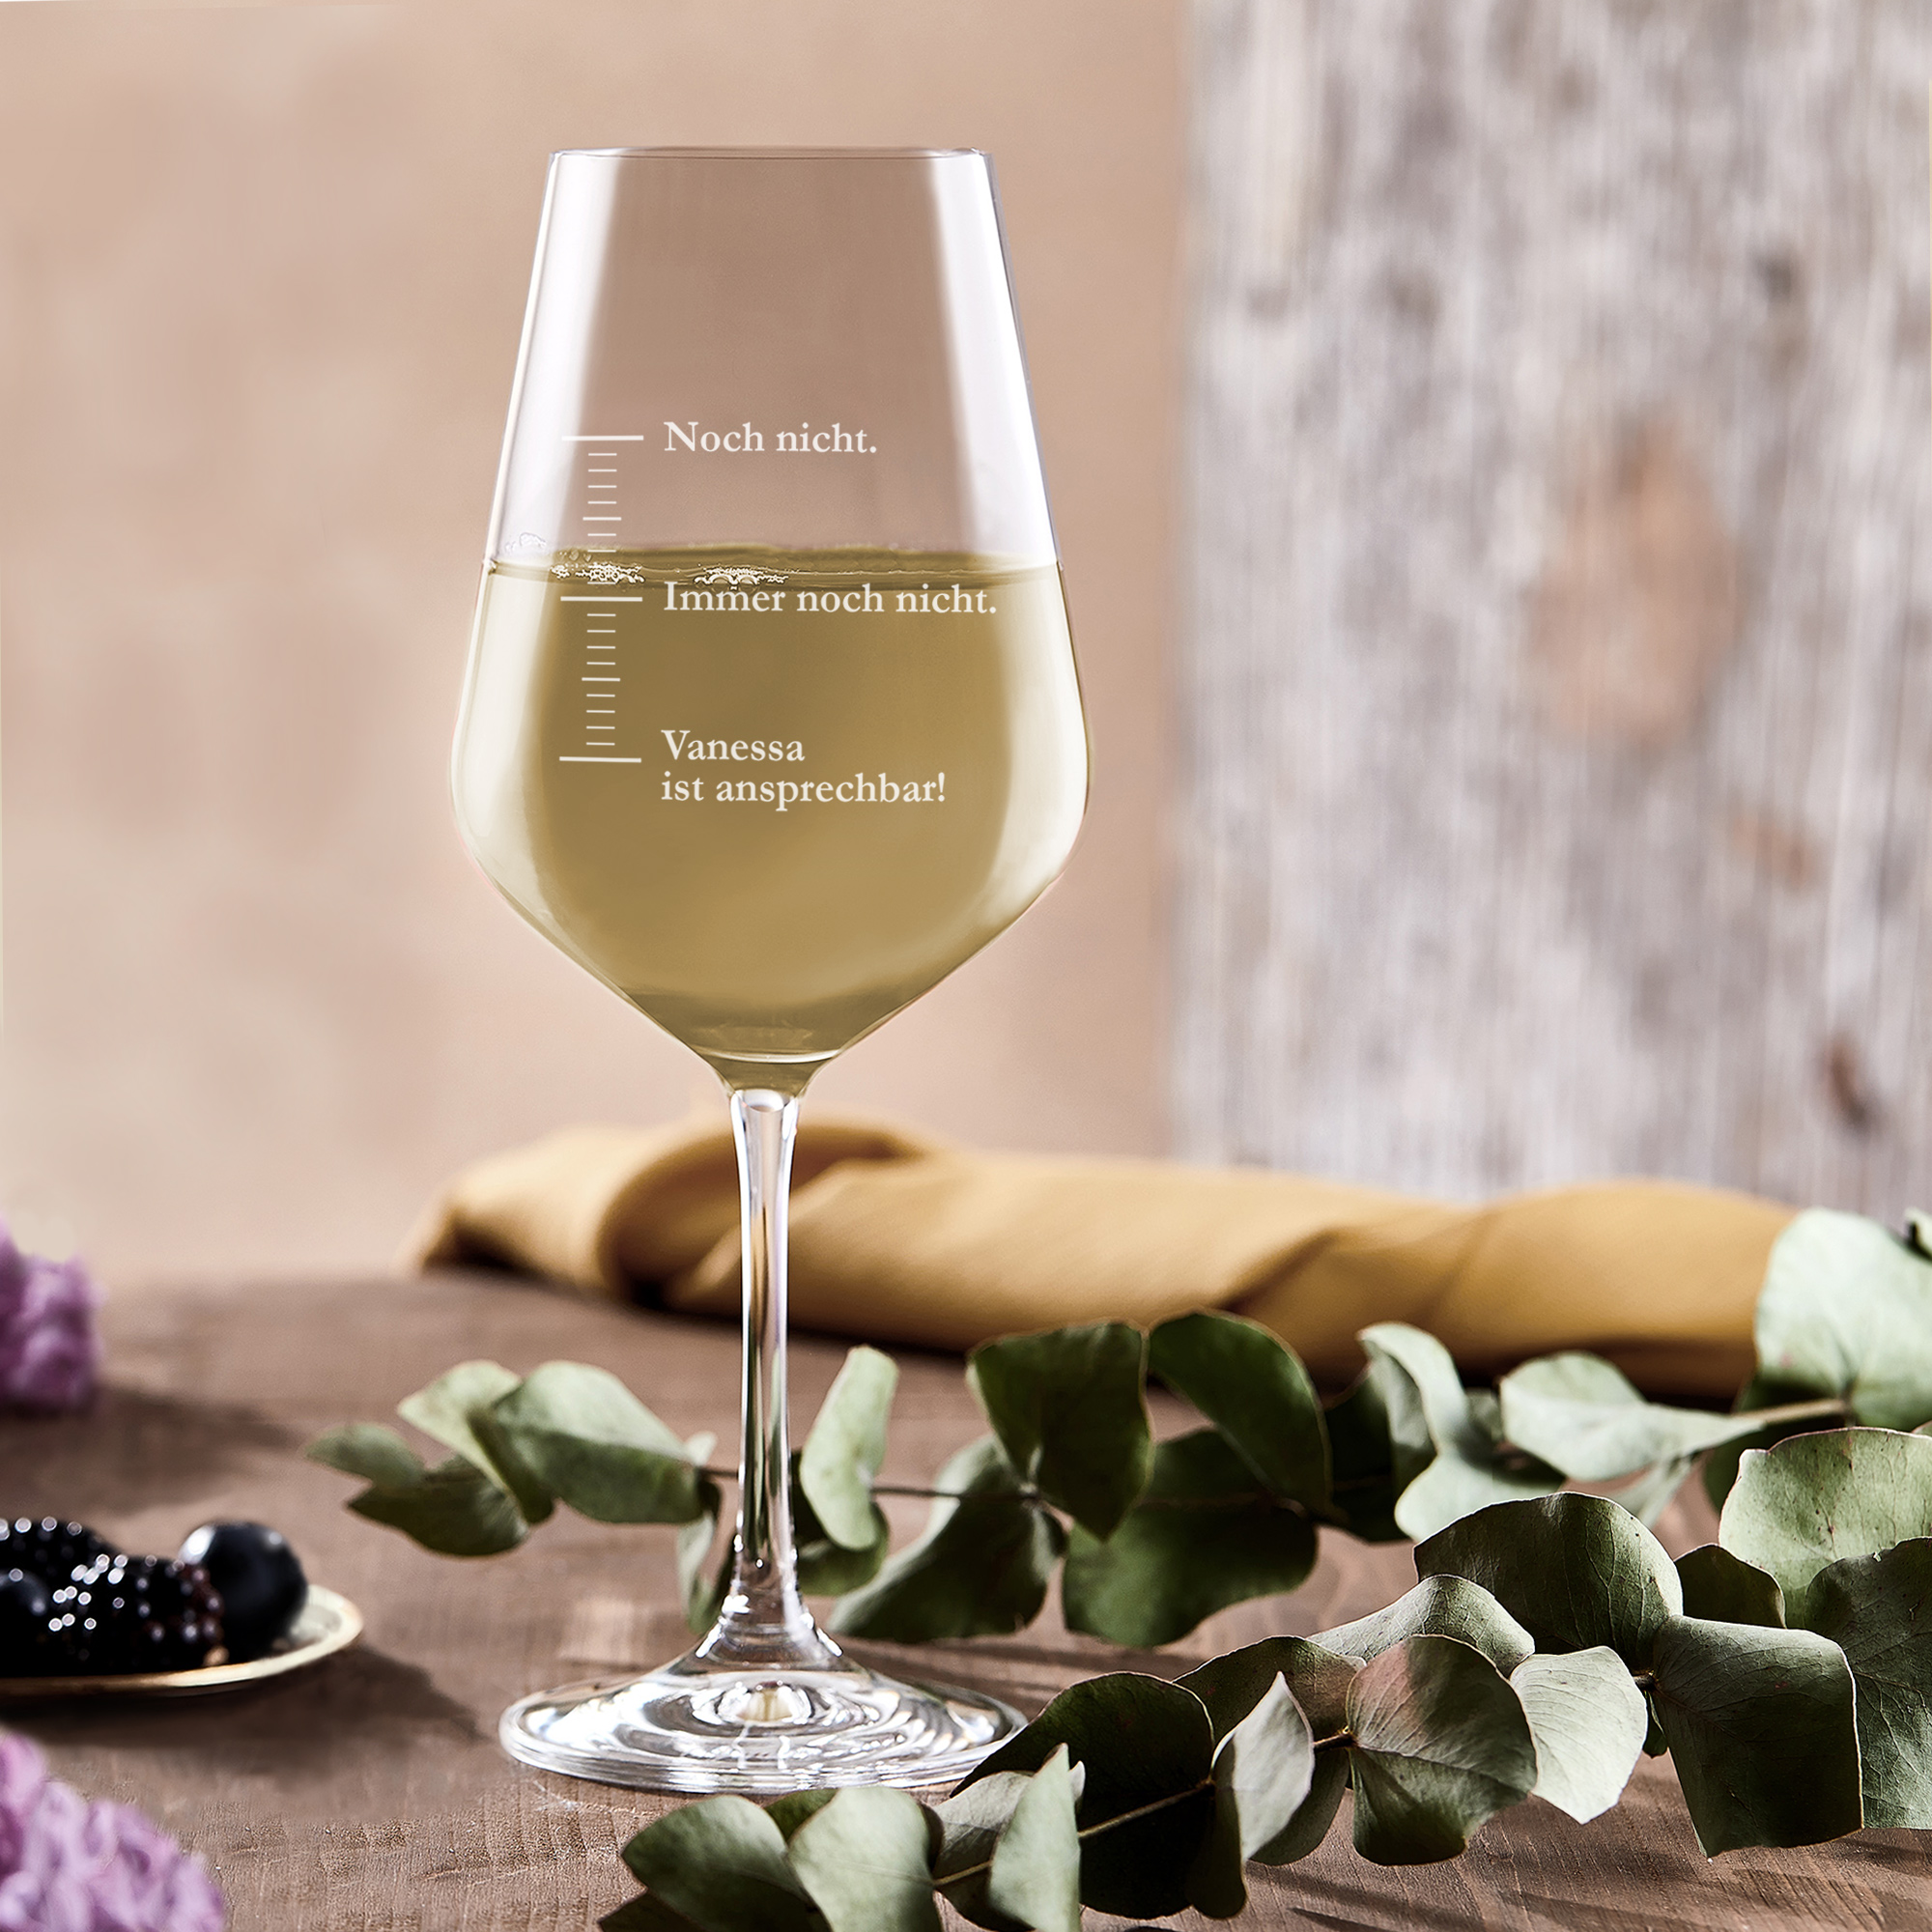 Weinglas mit Gravur - Maßeinheit - Noch nicht